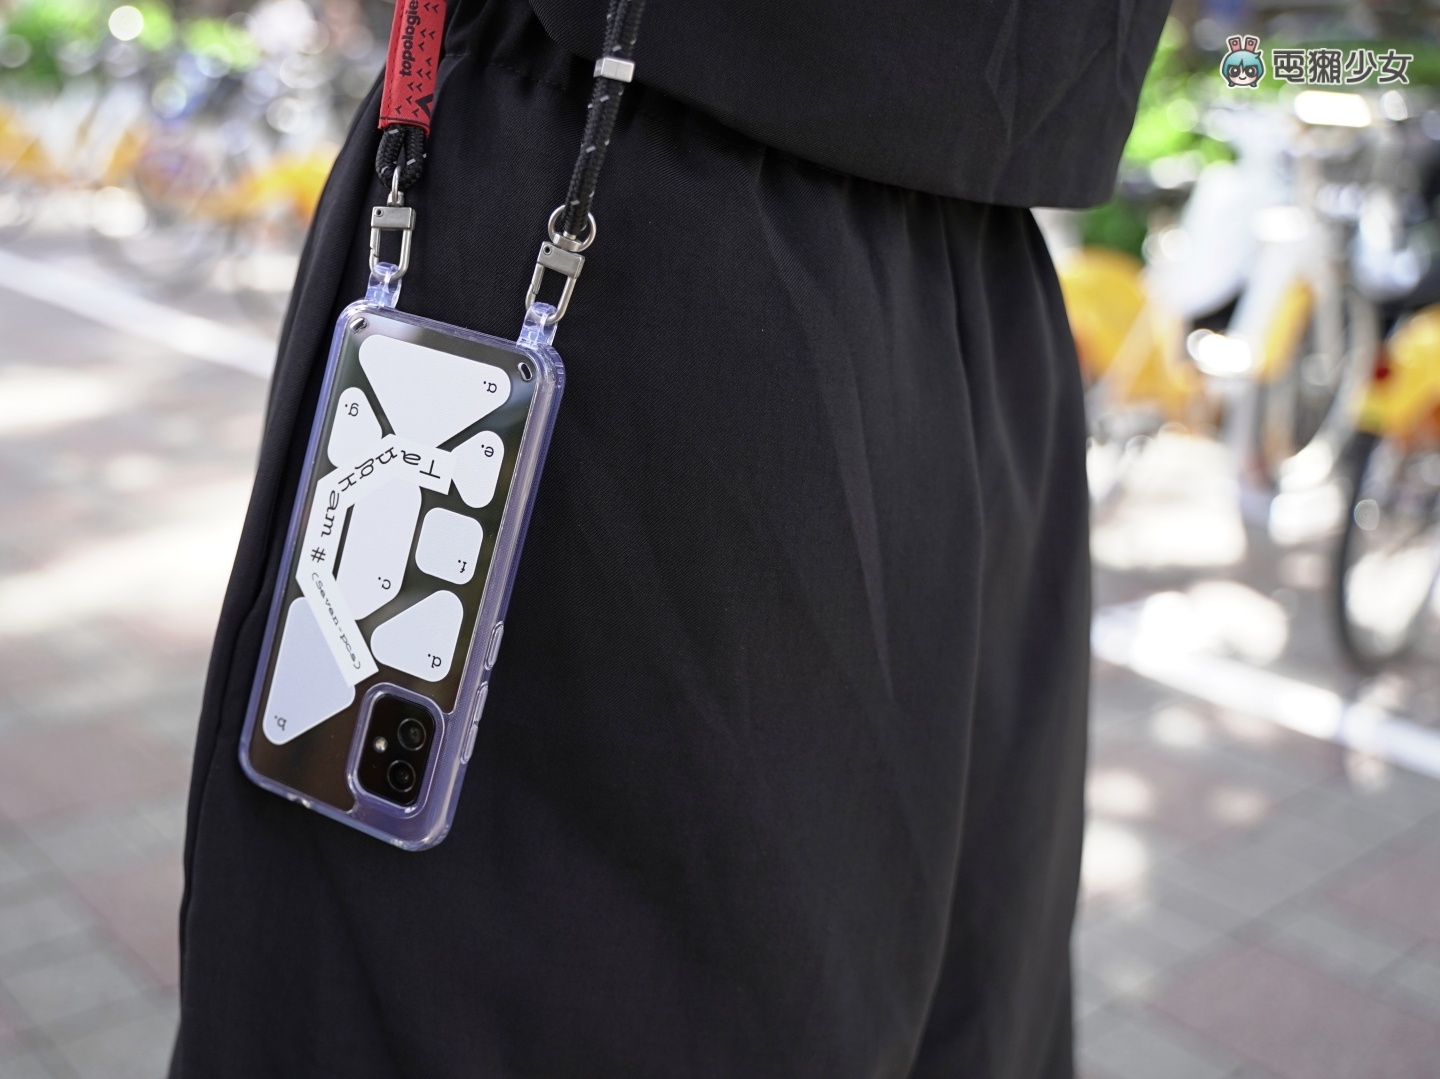 也太好看！Zenfone 8 設計師聯名手機殼限量登場 搭配 Topologie 繩索背帶時尚及便利性滿分